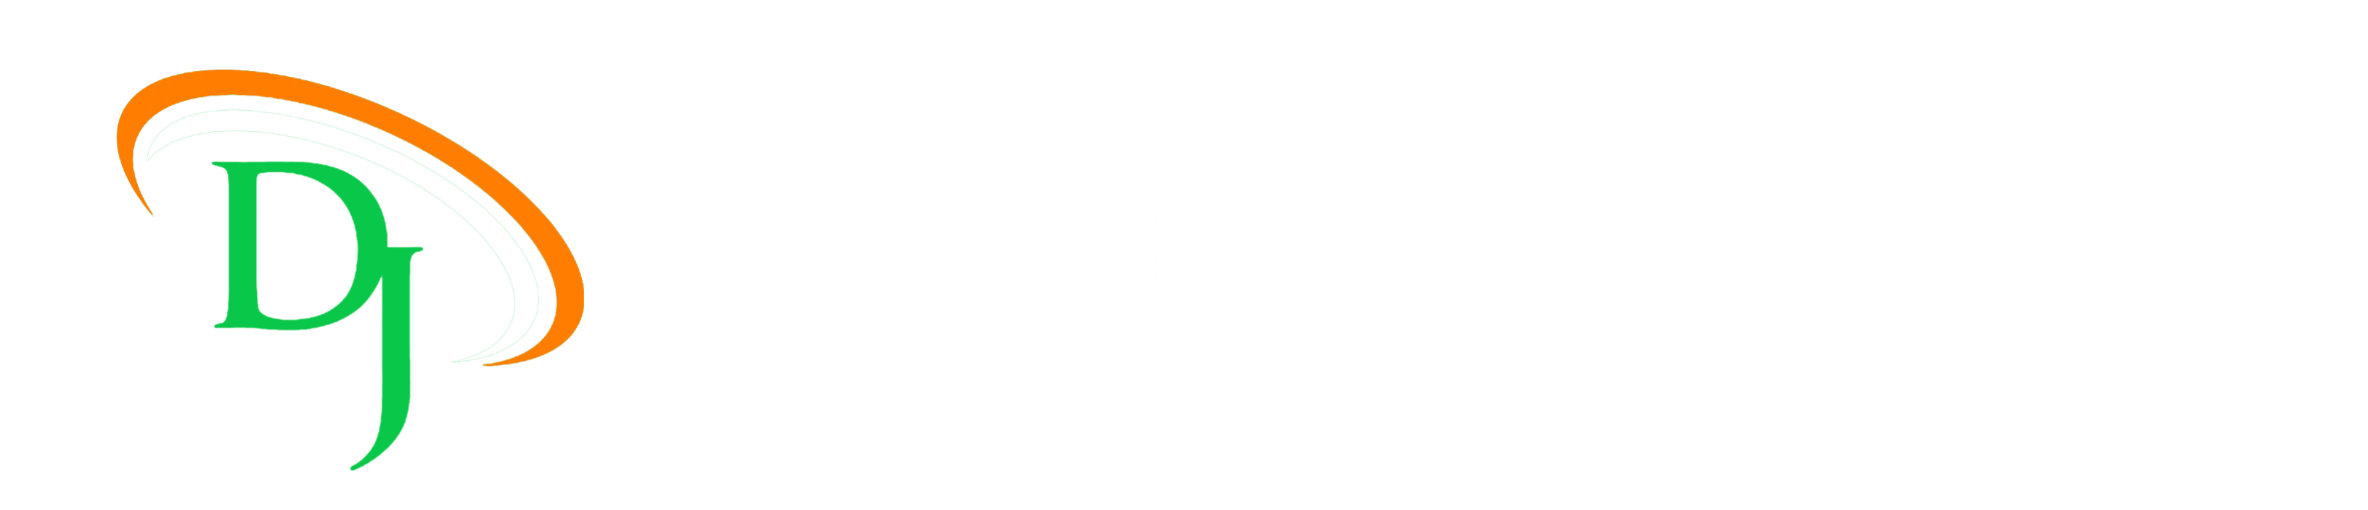 djgujarati.com